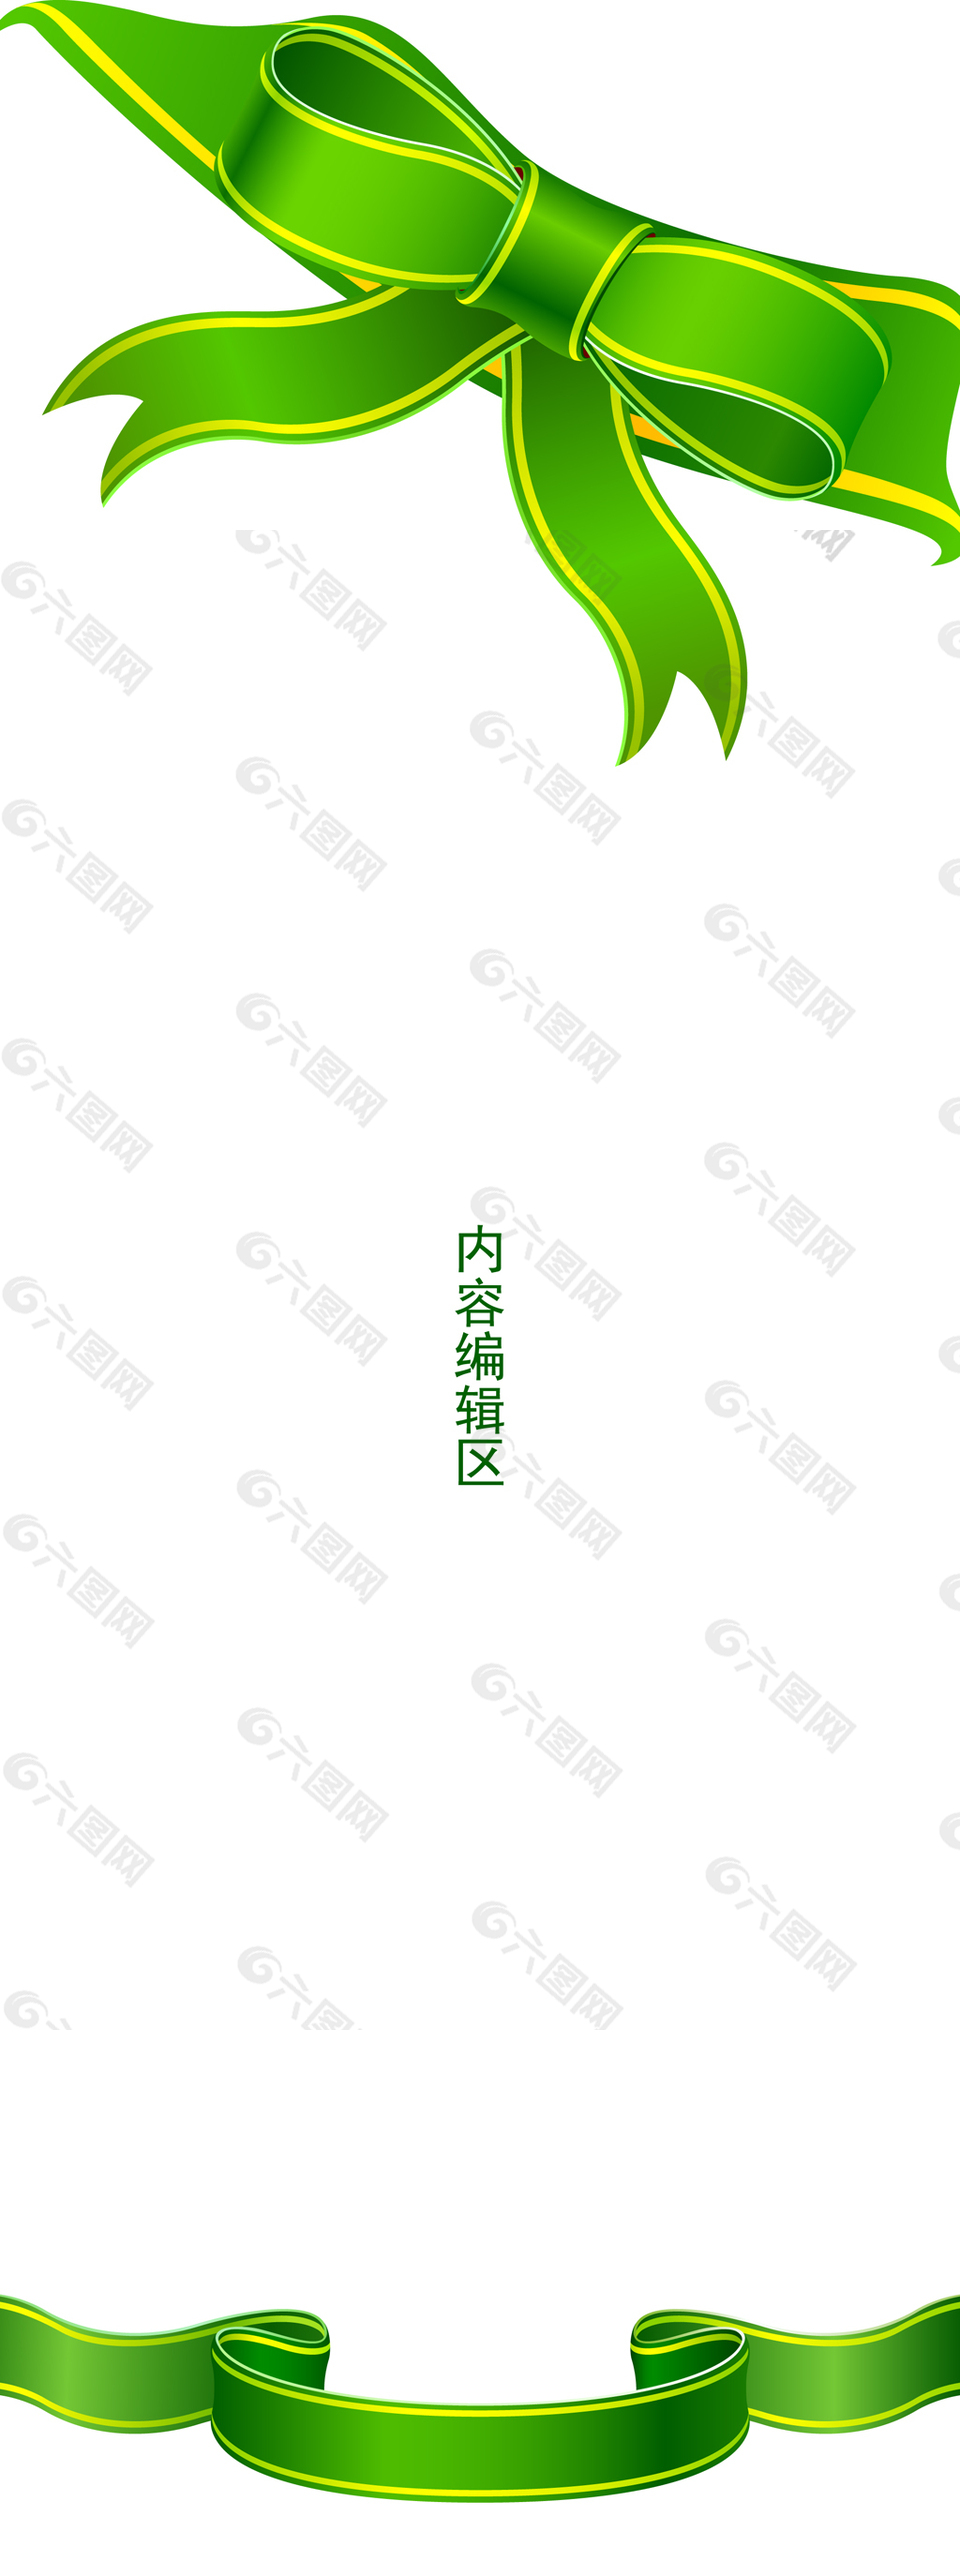 精美简约绿色中国结展架设计模板素材